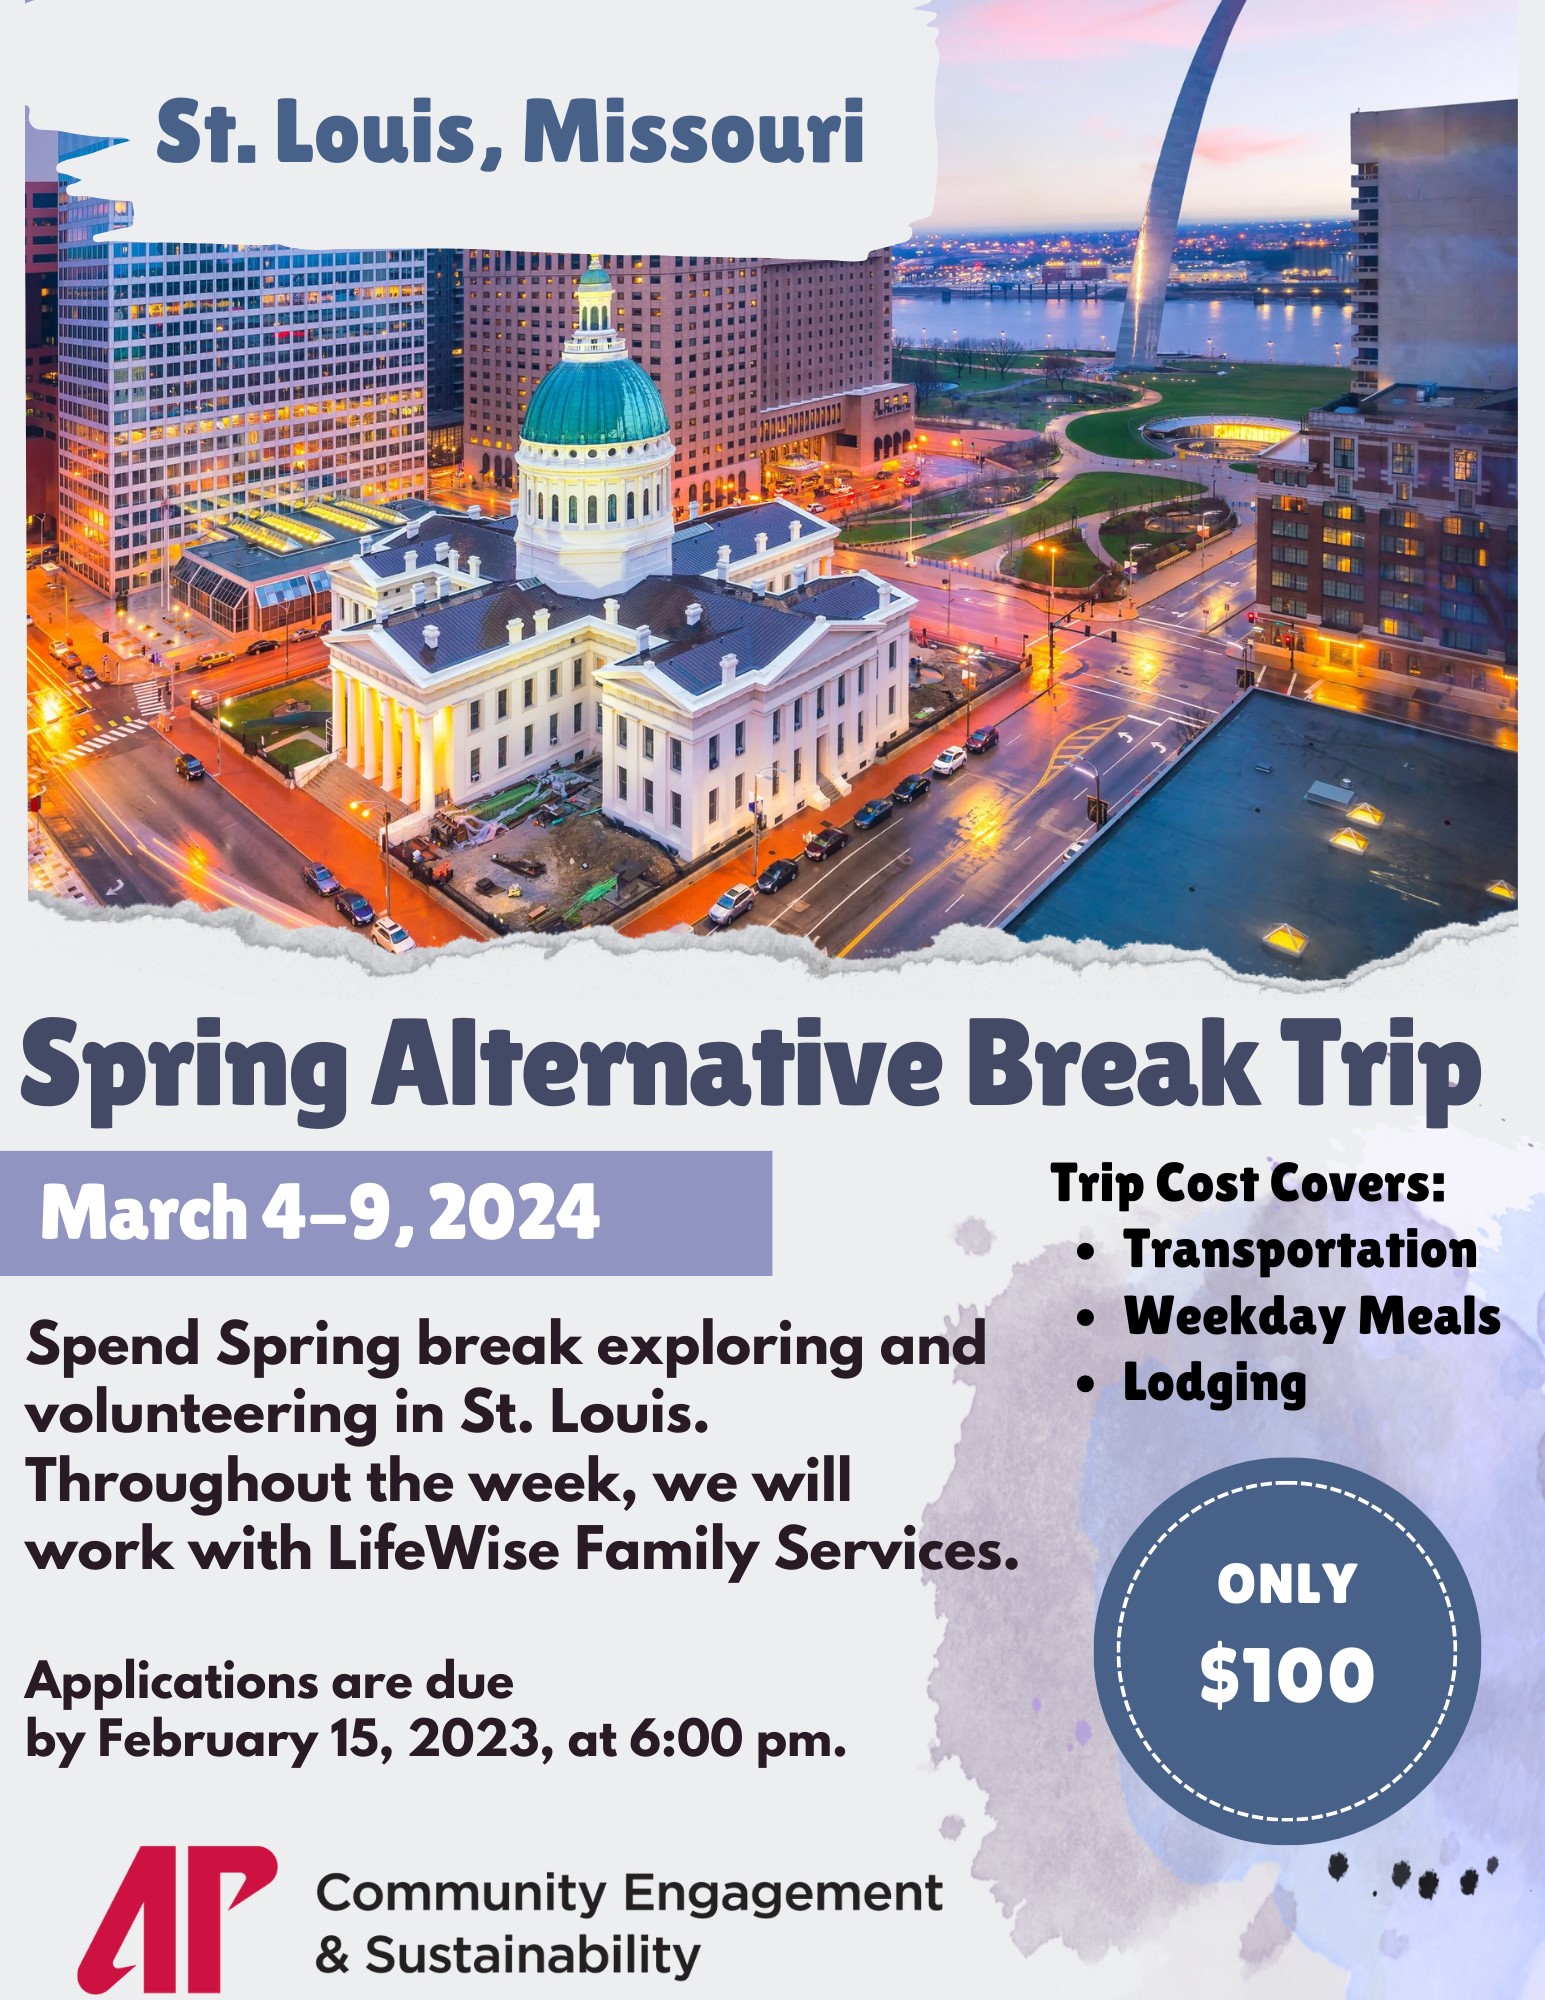 Flyer for alt break trip in spring break 2024 to St. Louis